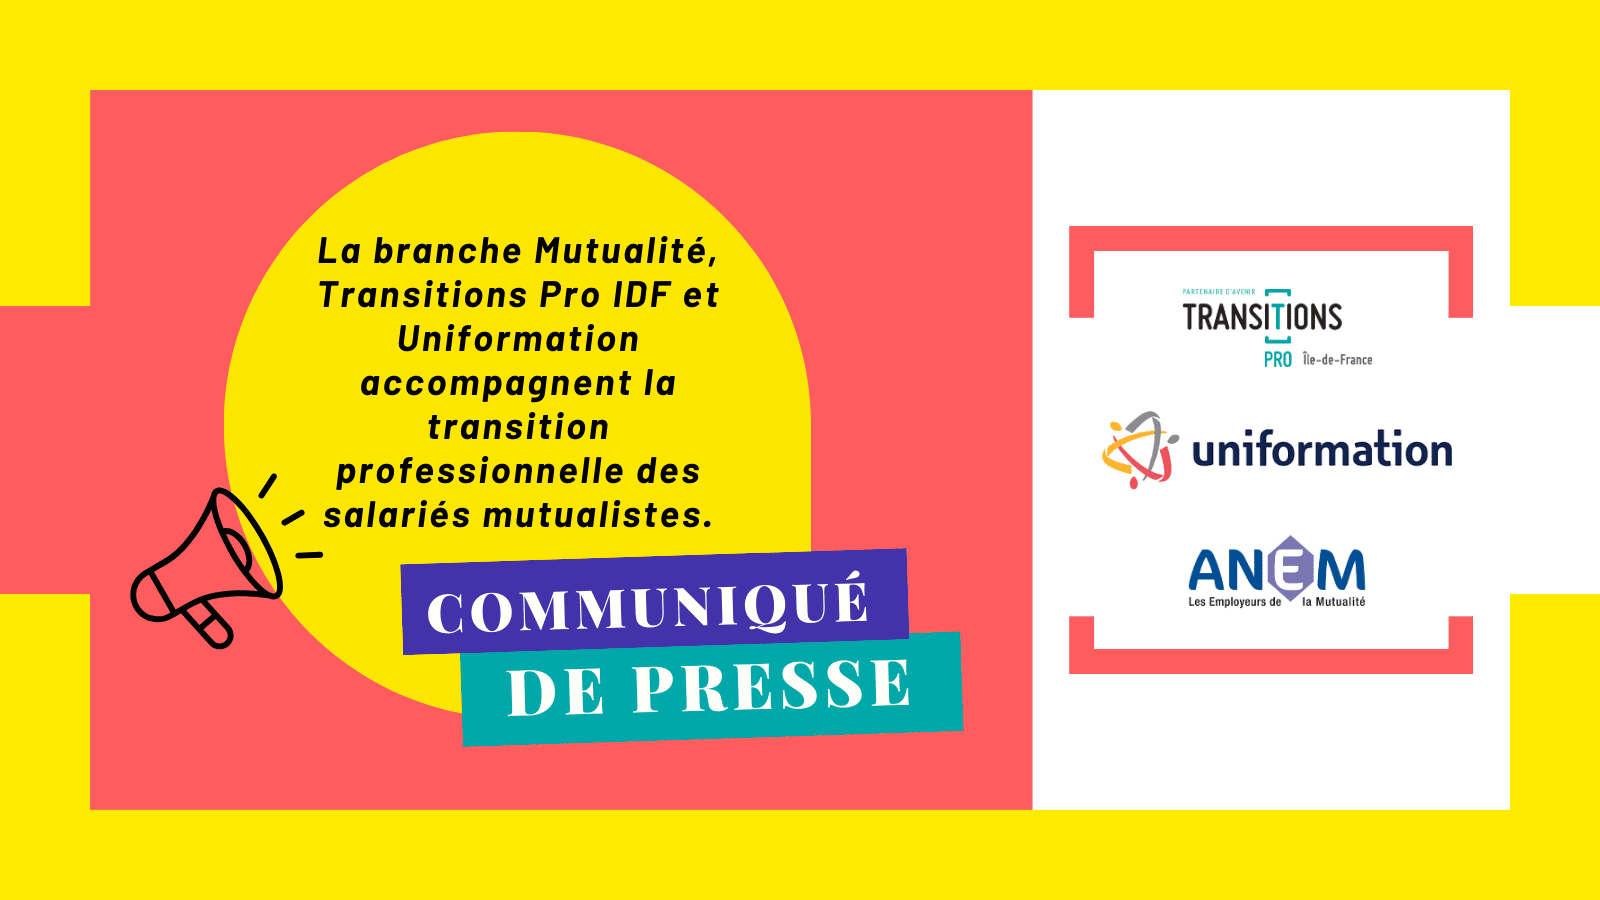 La branche Mutualité, Transitions Pro Ile-de-France et Uniformation accompagnent la transition professionnelle des salariés mutualistes